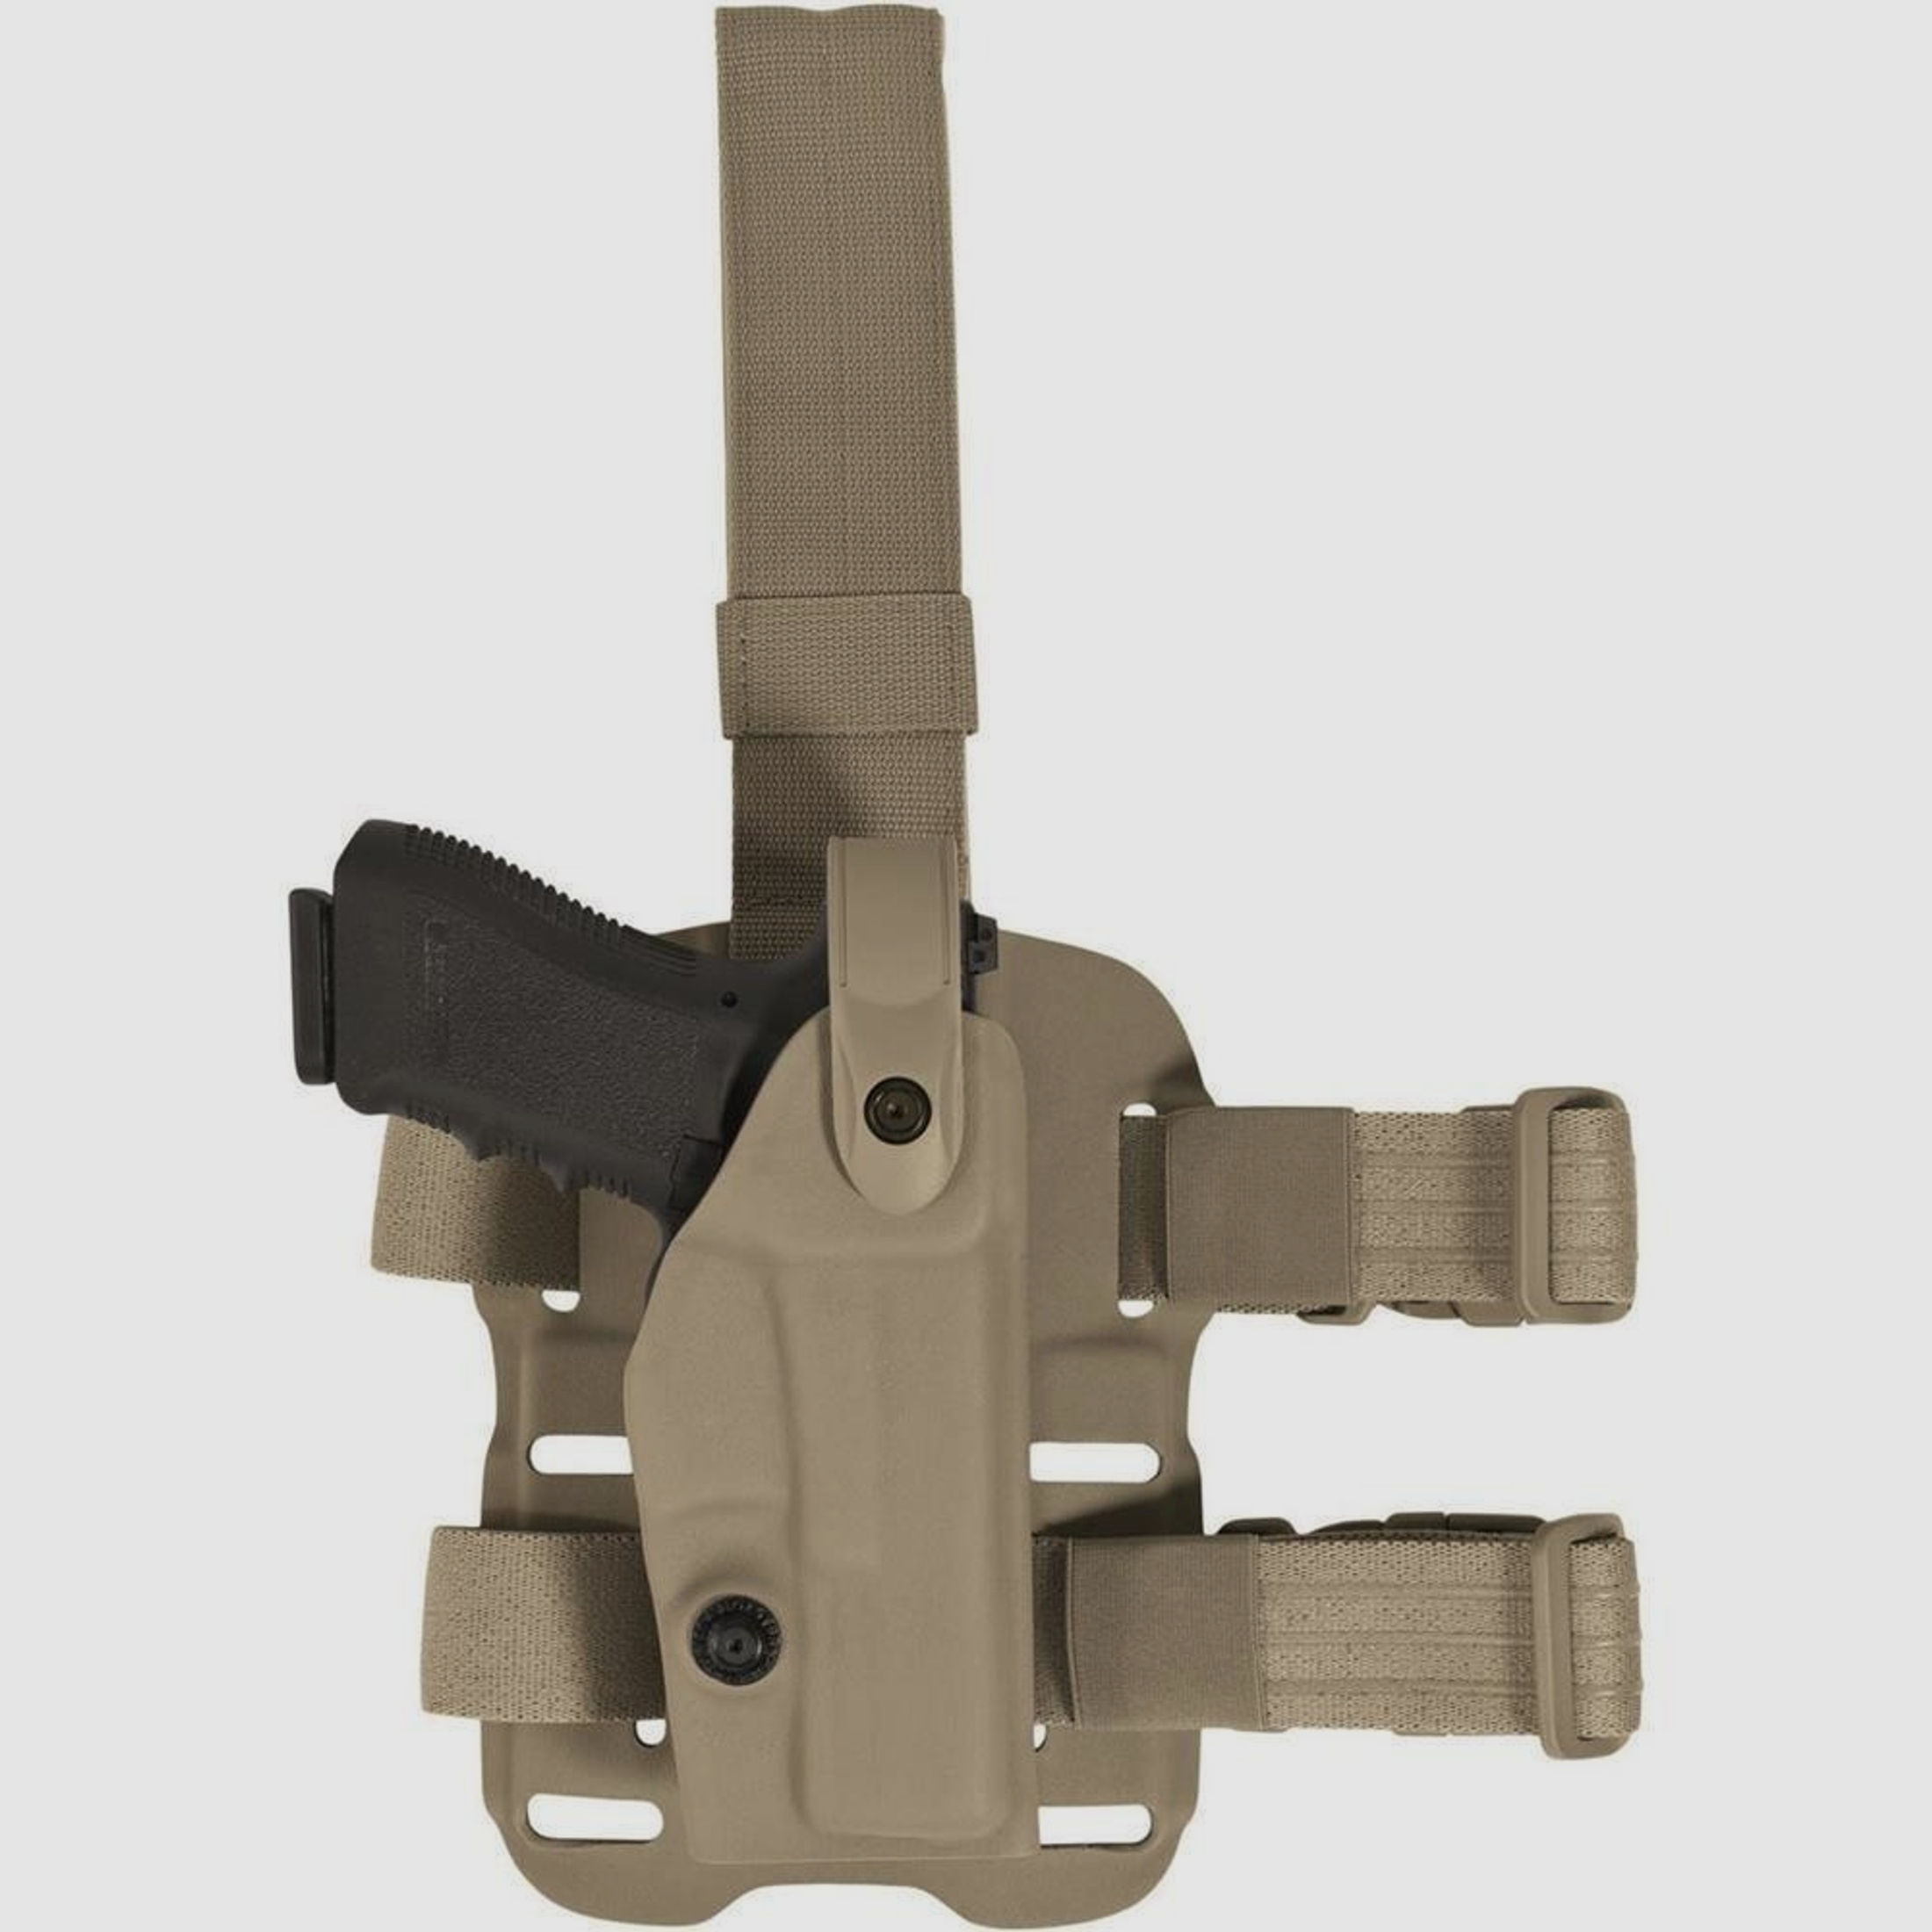 Modulares Oberschenkelholster "VETERAN" mit Sicherheitslevel II Glock 20 / 21-OD Green-Rechtshänder